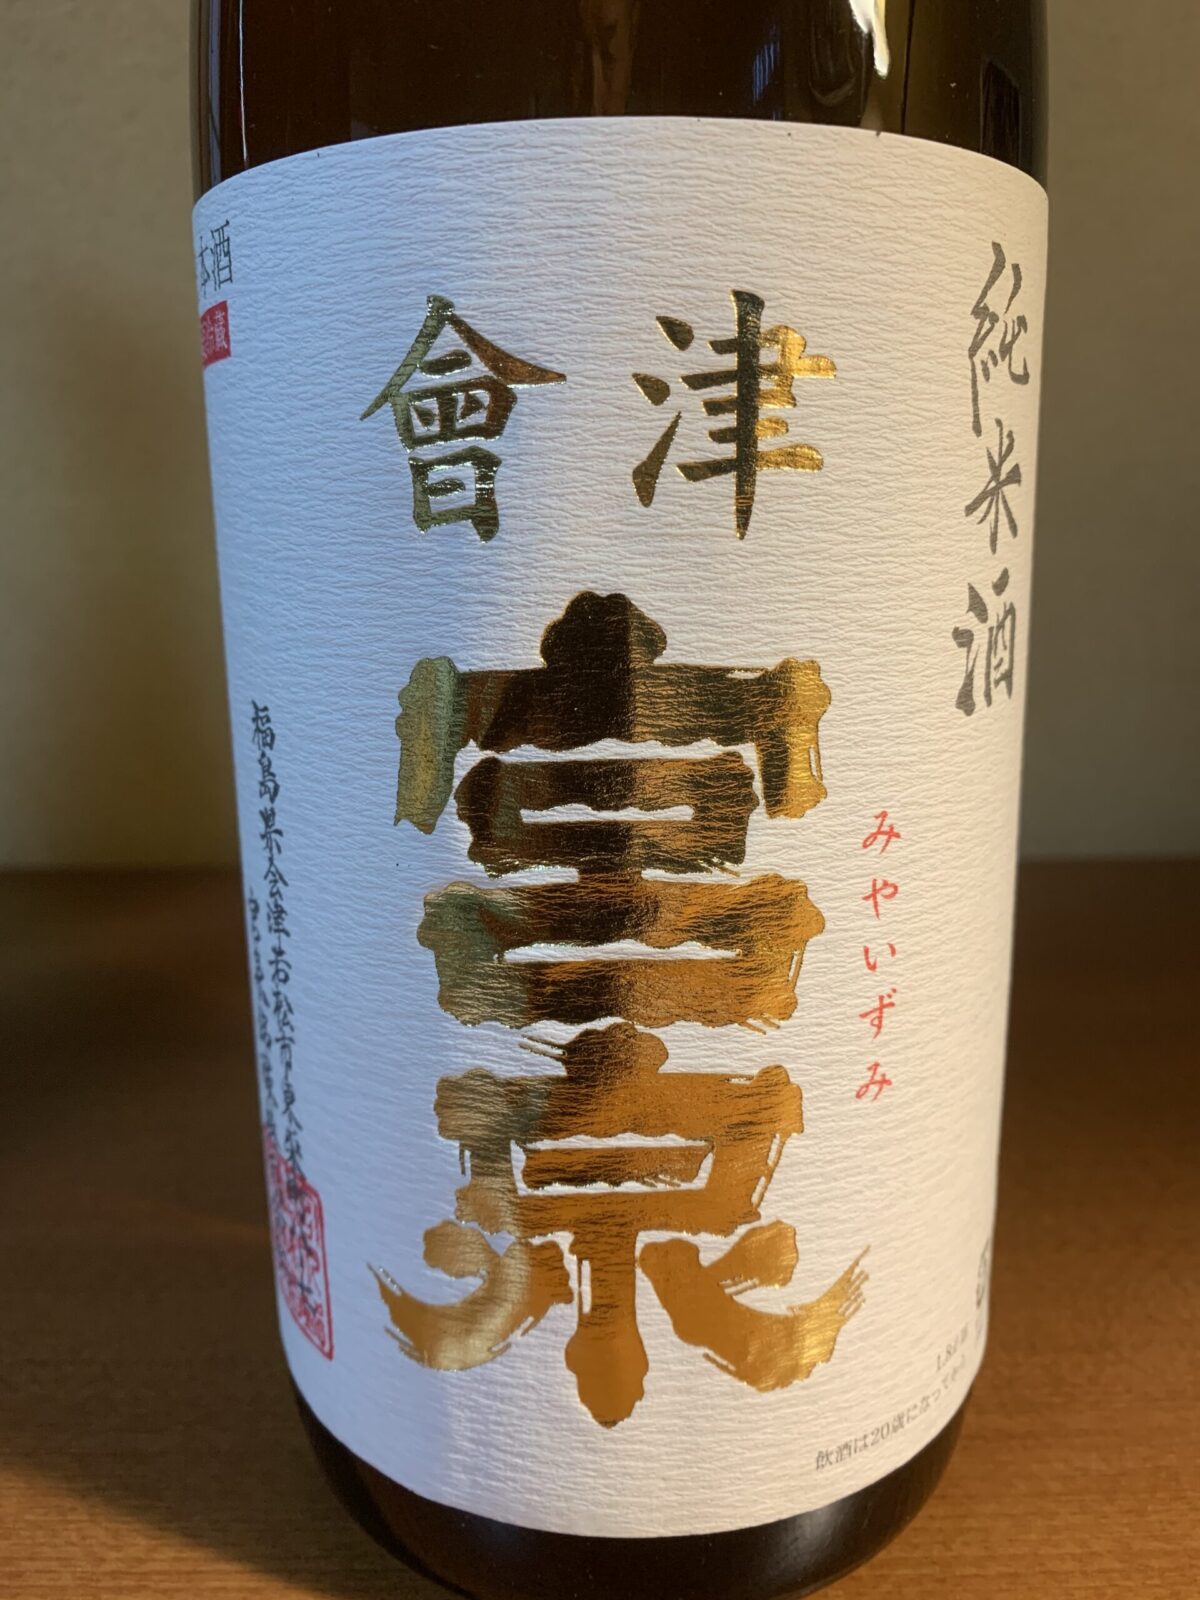 福島の地酒『会津宮泉 純米酒 無濾過生』は米の旨みと酸味のバランスが抜群、キレよし